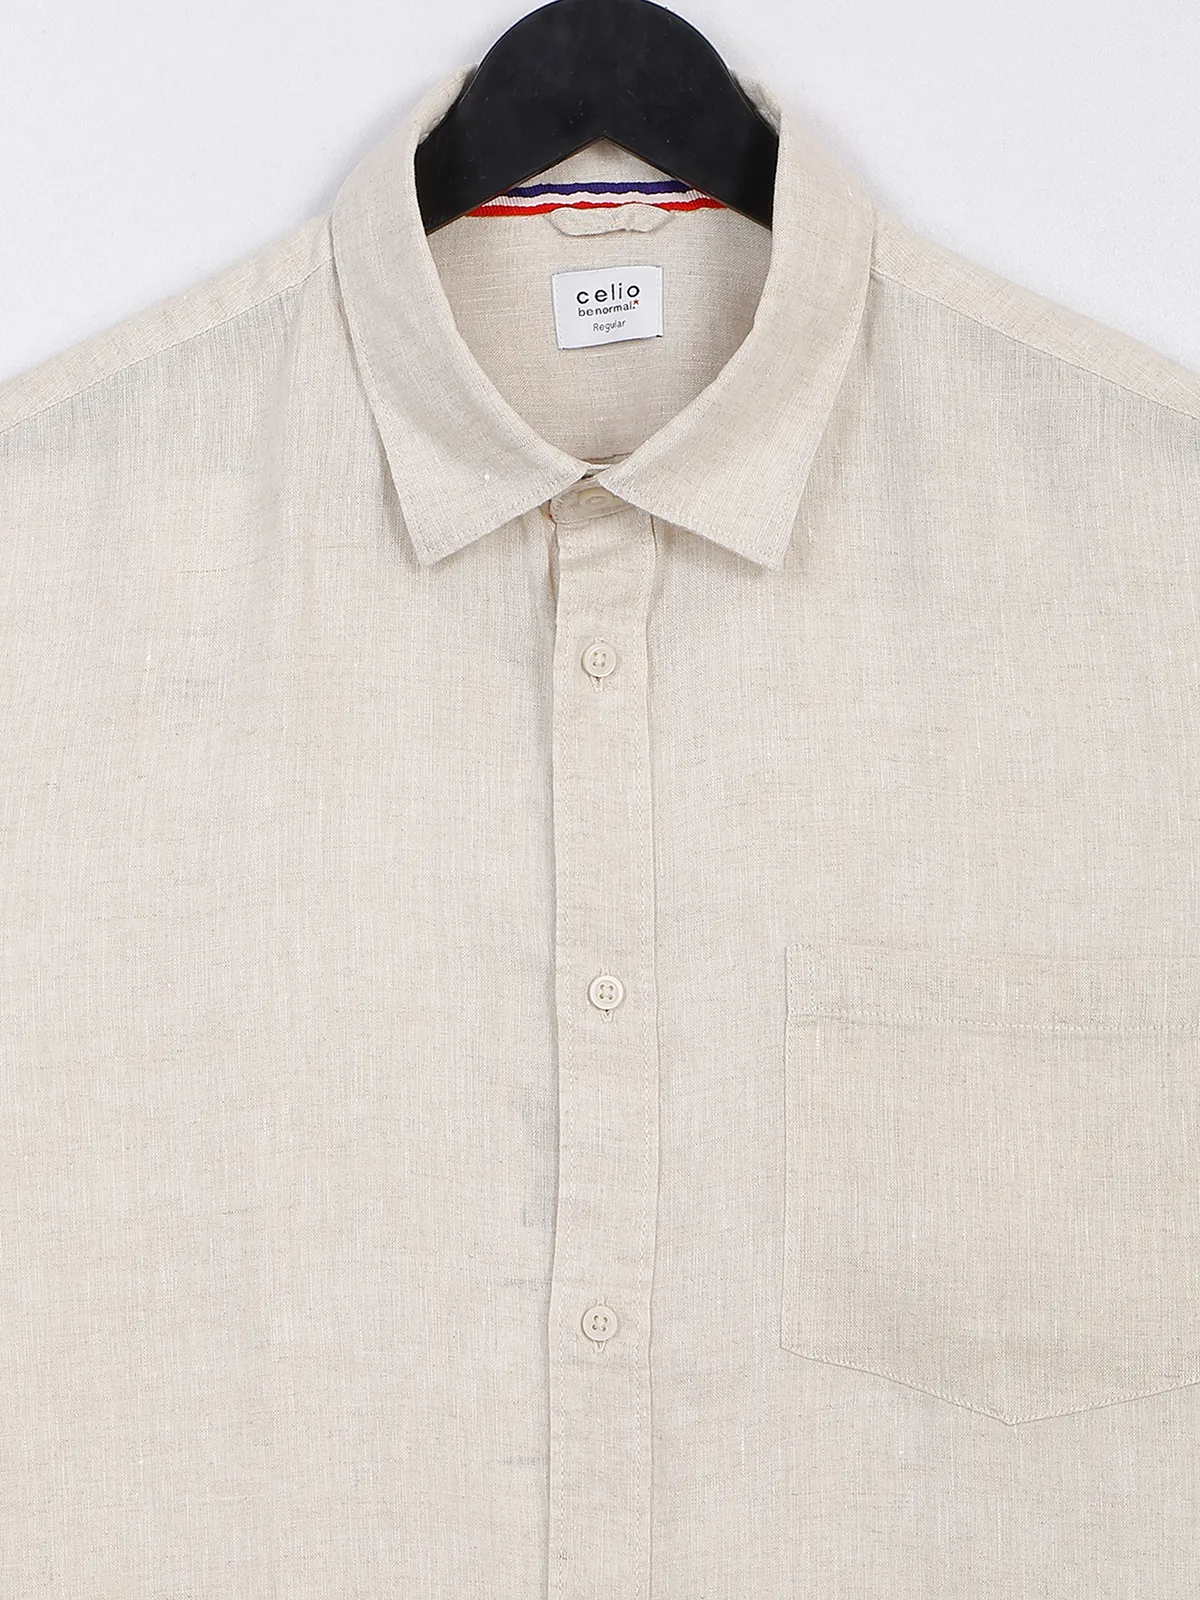 Celio beige plain linen shirt